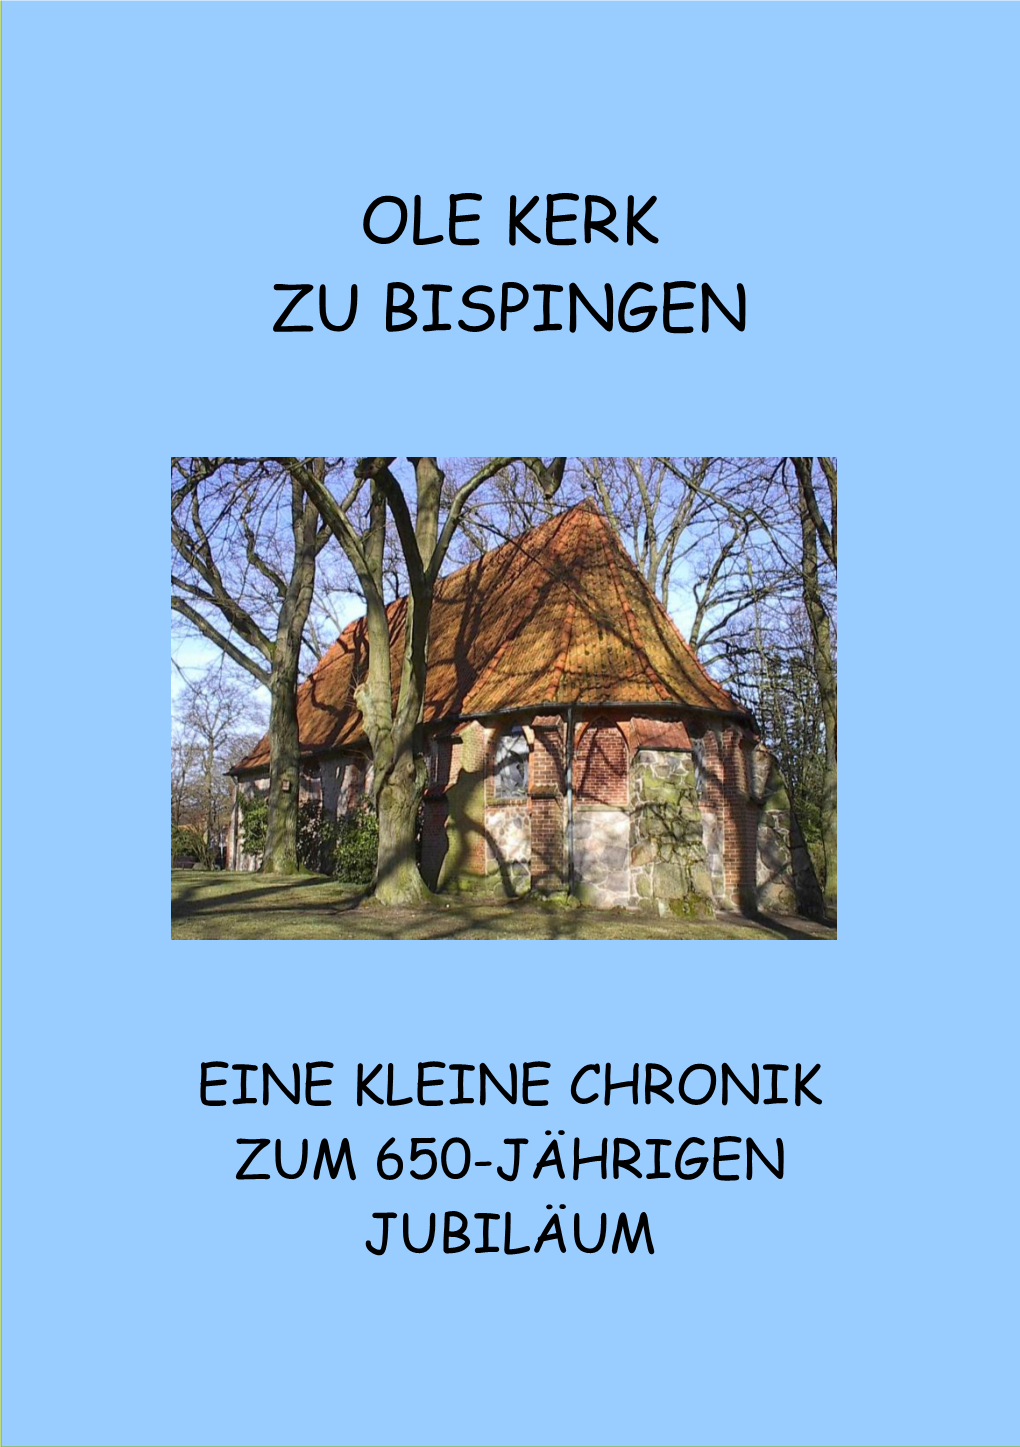 Chronik Ole Kerk